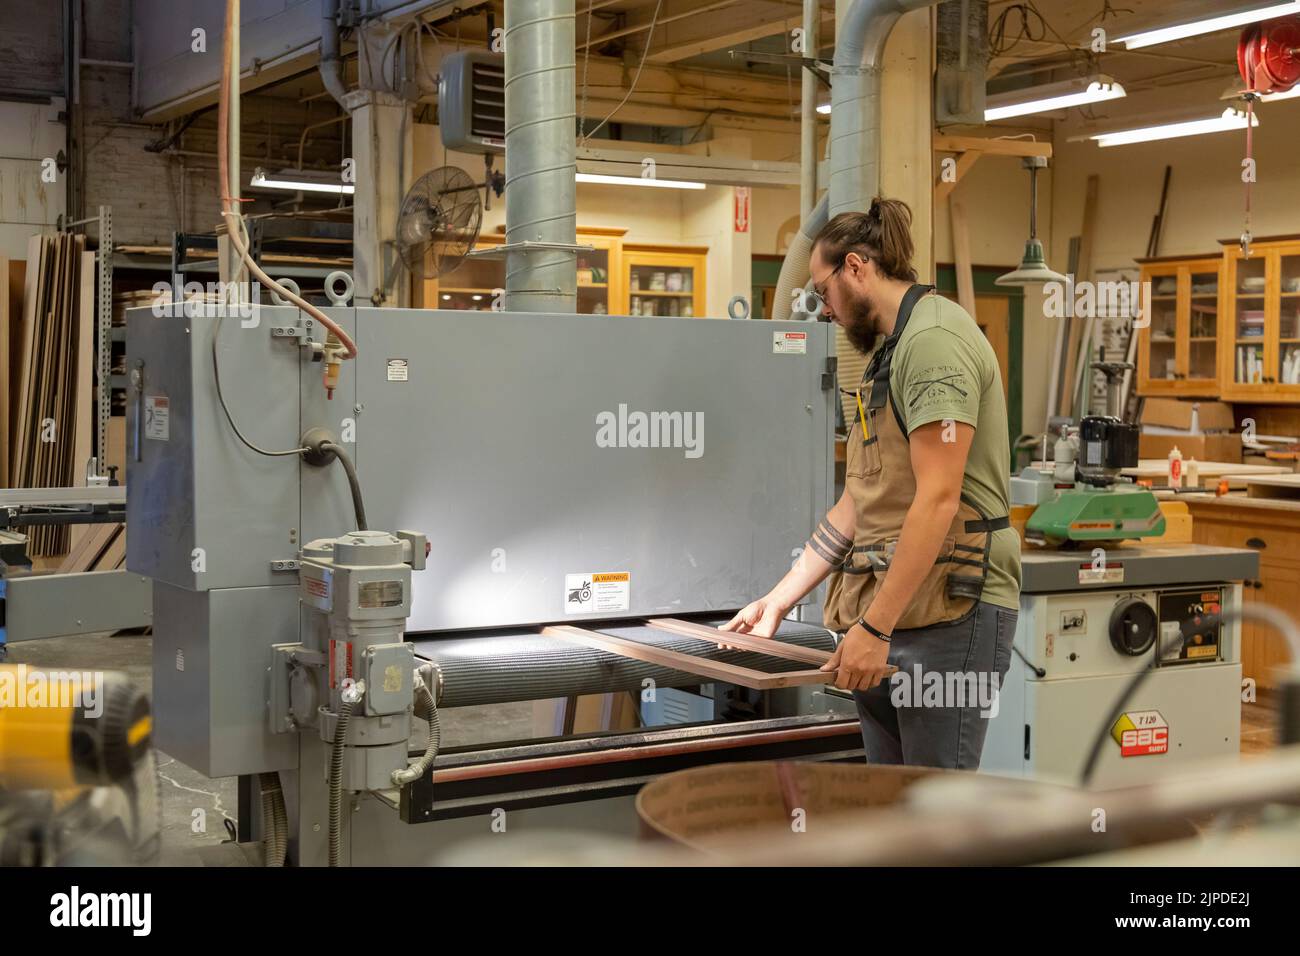 Kalamazoo, Michigan - Trabajadores calificados construyen gabinetes personalizados en la tienda de ebanistas Homestead, ubicada en el Park Trades Center. Esta luz de la máquina Foto de stock